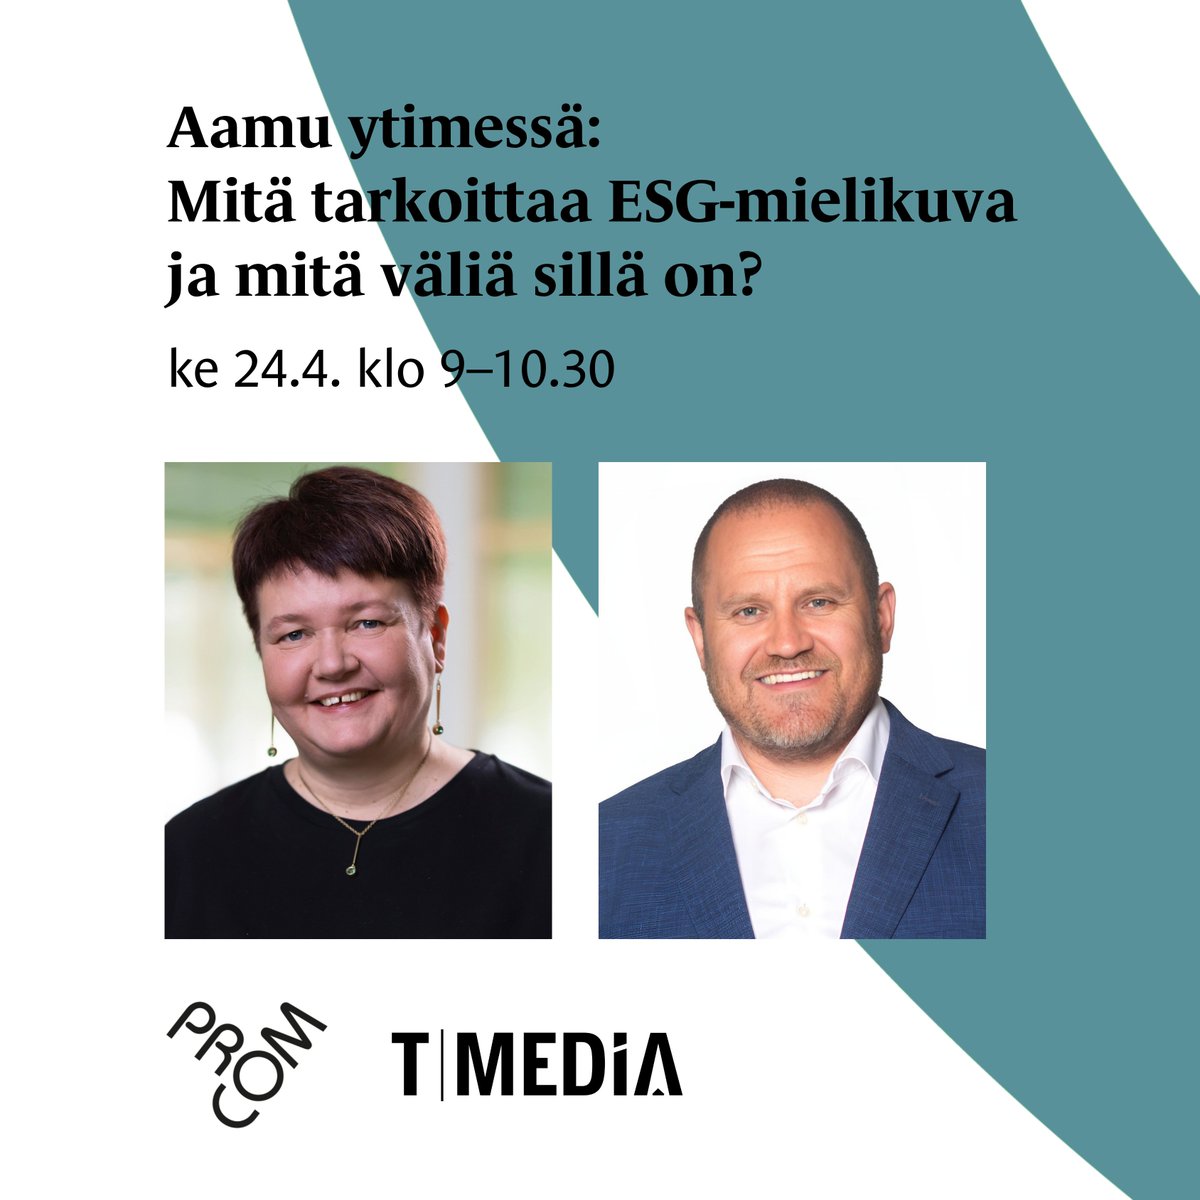 Vielä ehdit Aamu ytimessä -tilaisuuteen, joka starttaa kello 9.00! Ilmoittaudu nyt: tapahtumat.procom.fi/tapahtumat/aam… Puhujavieraina ovat Nina Elomaa (S-ryhmä) ja Riku Ruokolahti (T-Media). Tilaisuus järjestetään yhteistyössä @TMedia_Advisory'n kanssa, striimauskumppanina @StremiaLive.